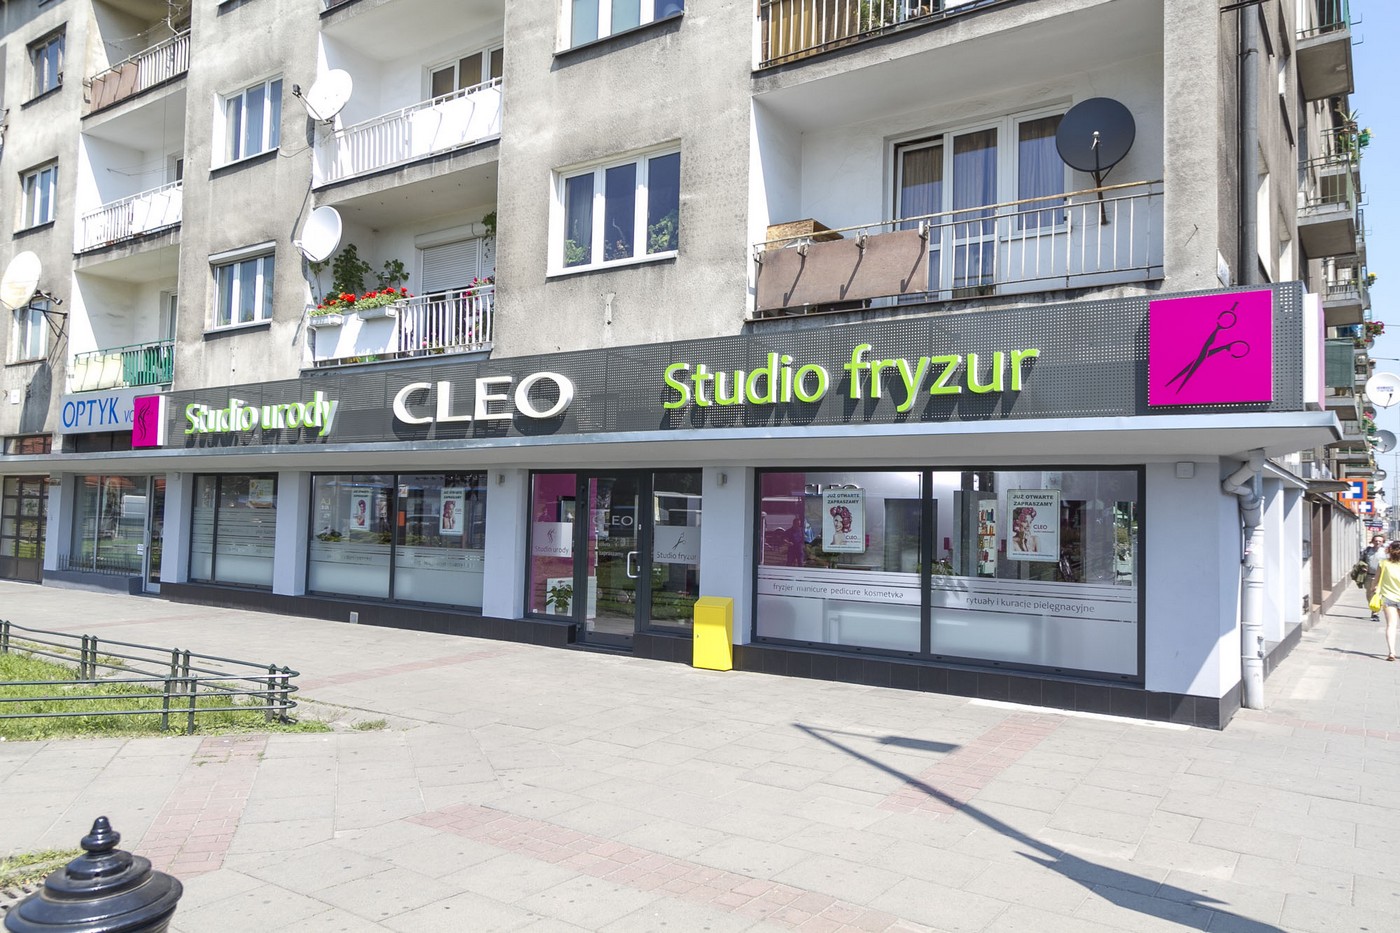 Salon Fryzjersko Kosmetyczny Cleo Krakow